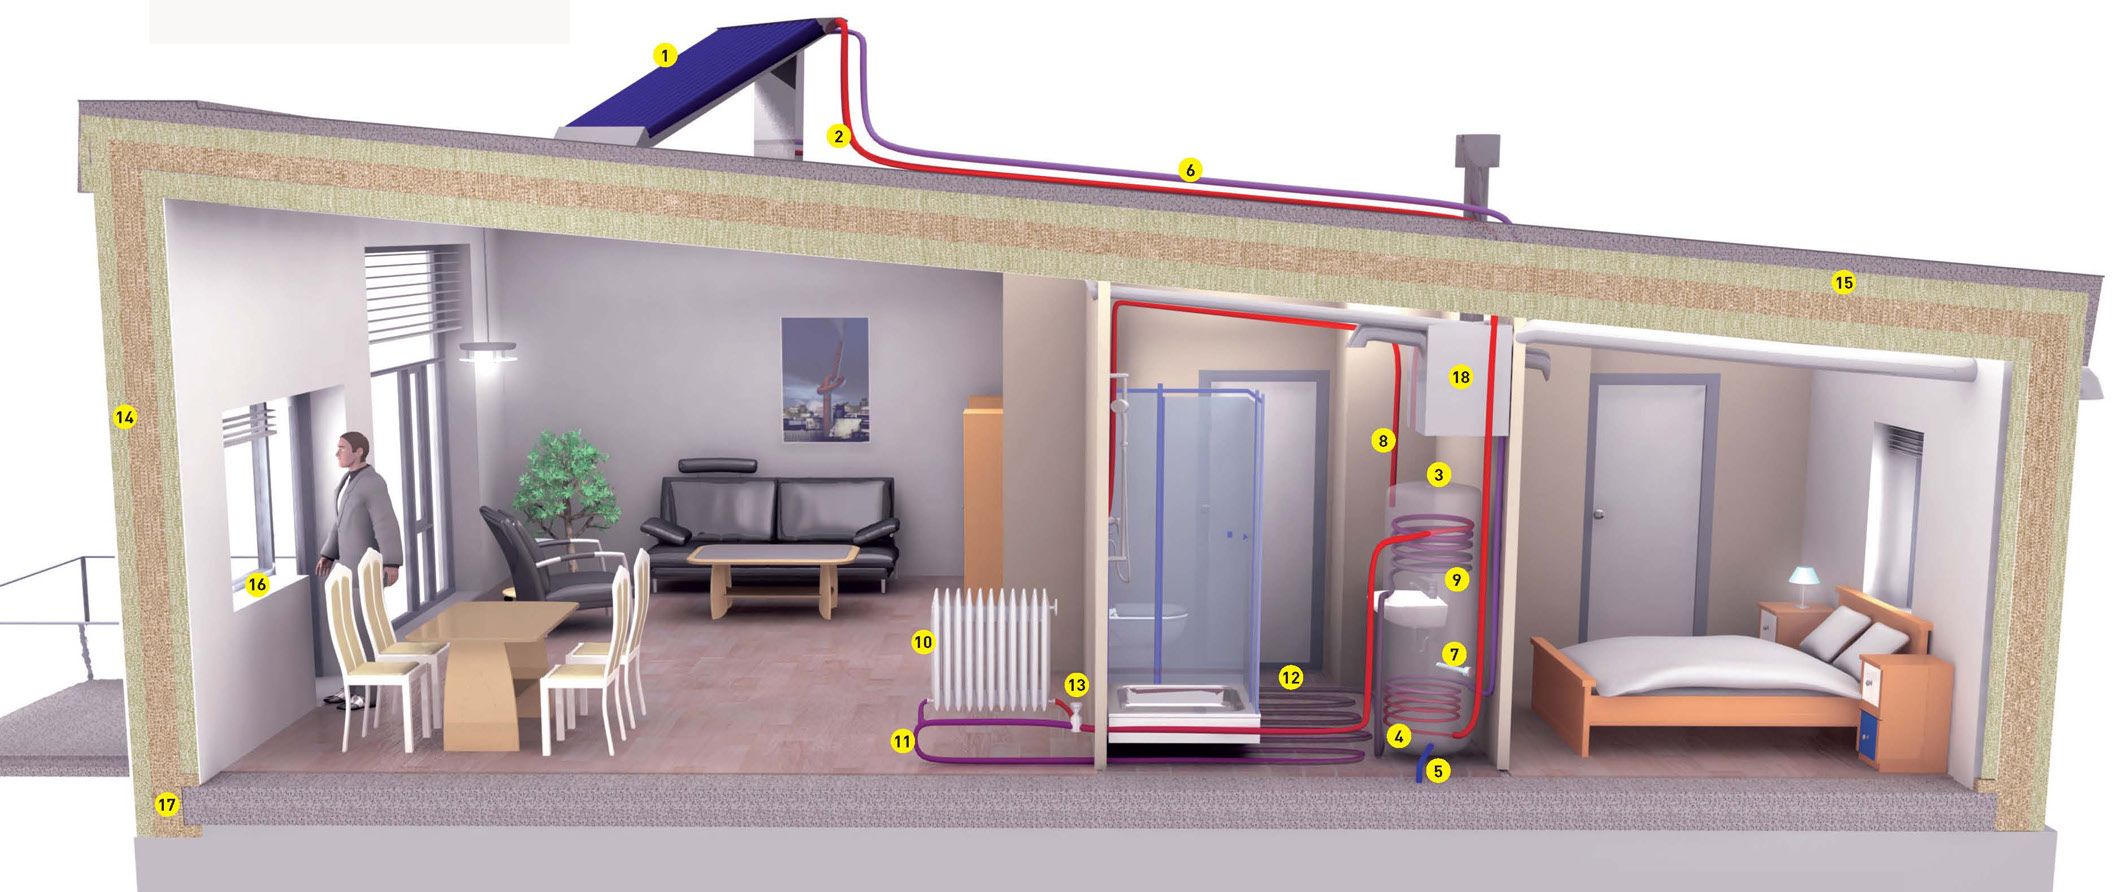 15 Eksempler på bygningselementer i hus med svært lavt energibehov Energieffektive varme- og ventilasjonssystemer En må også vie oppmerksomhet til reduksjon av varmetap på grunn av ventilasjon og